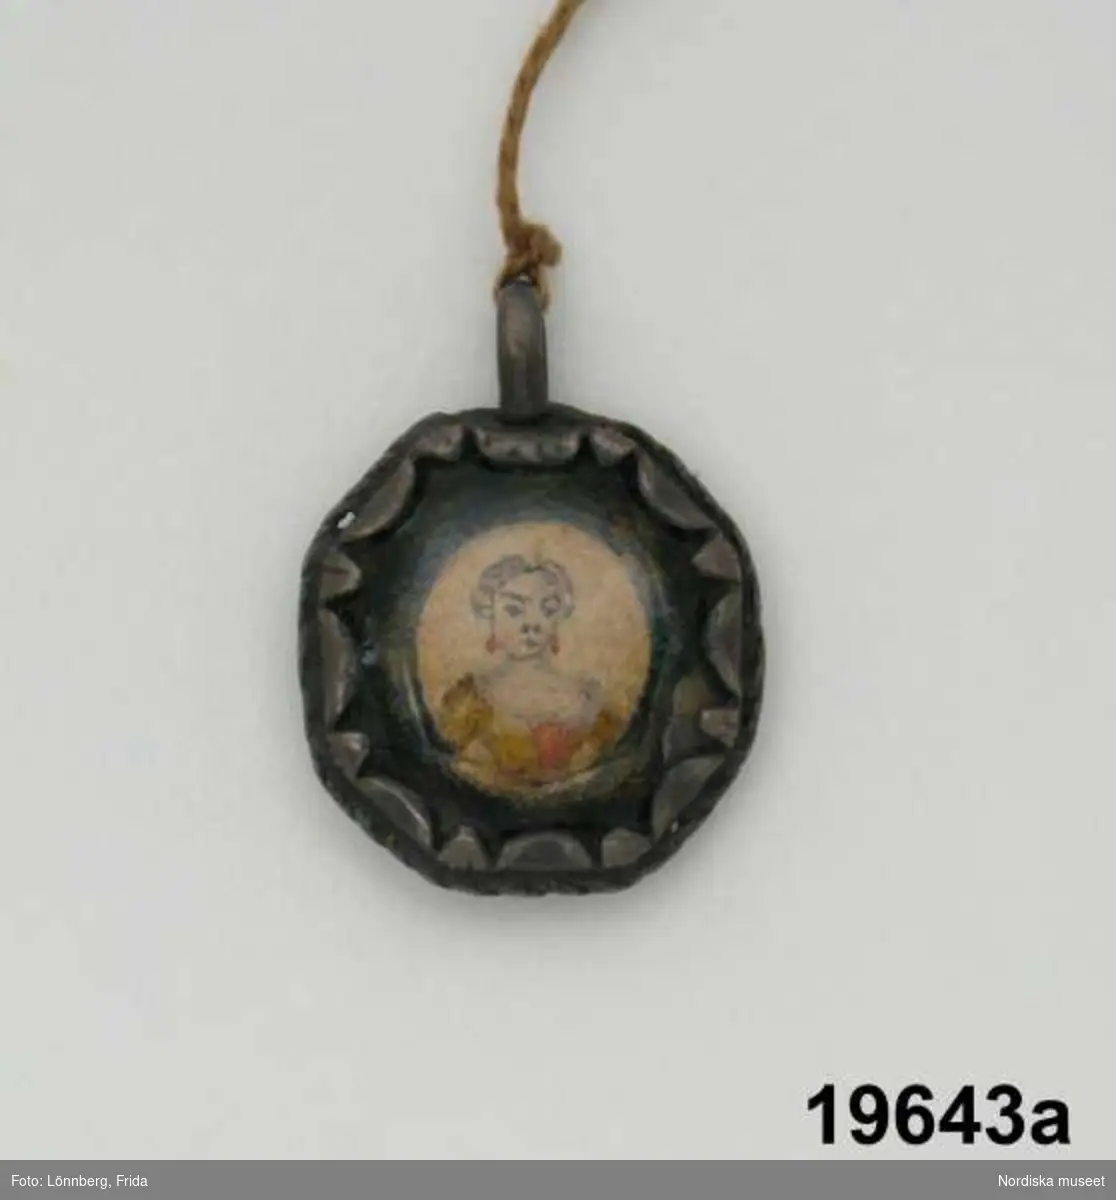 Huvudliggare:
"Medaljong, amulett och käpp
a. Medaljong.
b. Amulett.
c. Käpp, till krycka.
Tillh. ss. 19,641.
G.ss. 19,633."